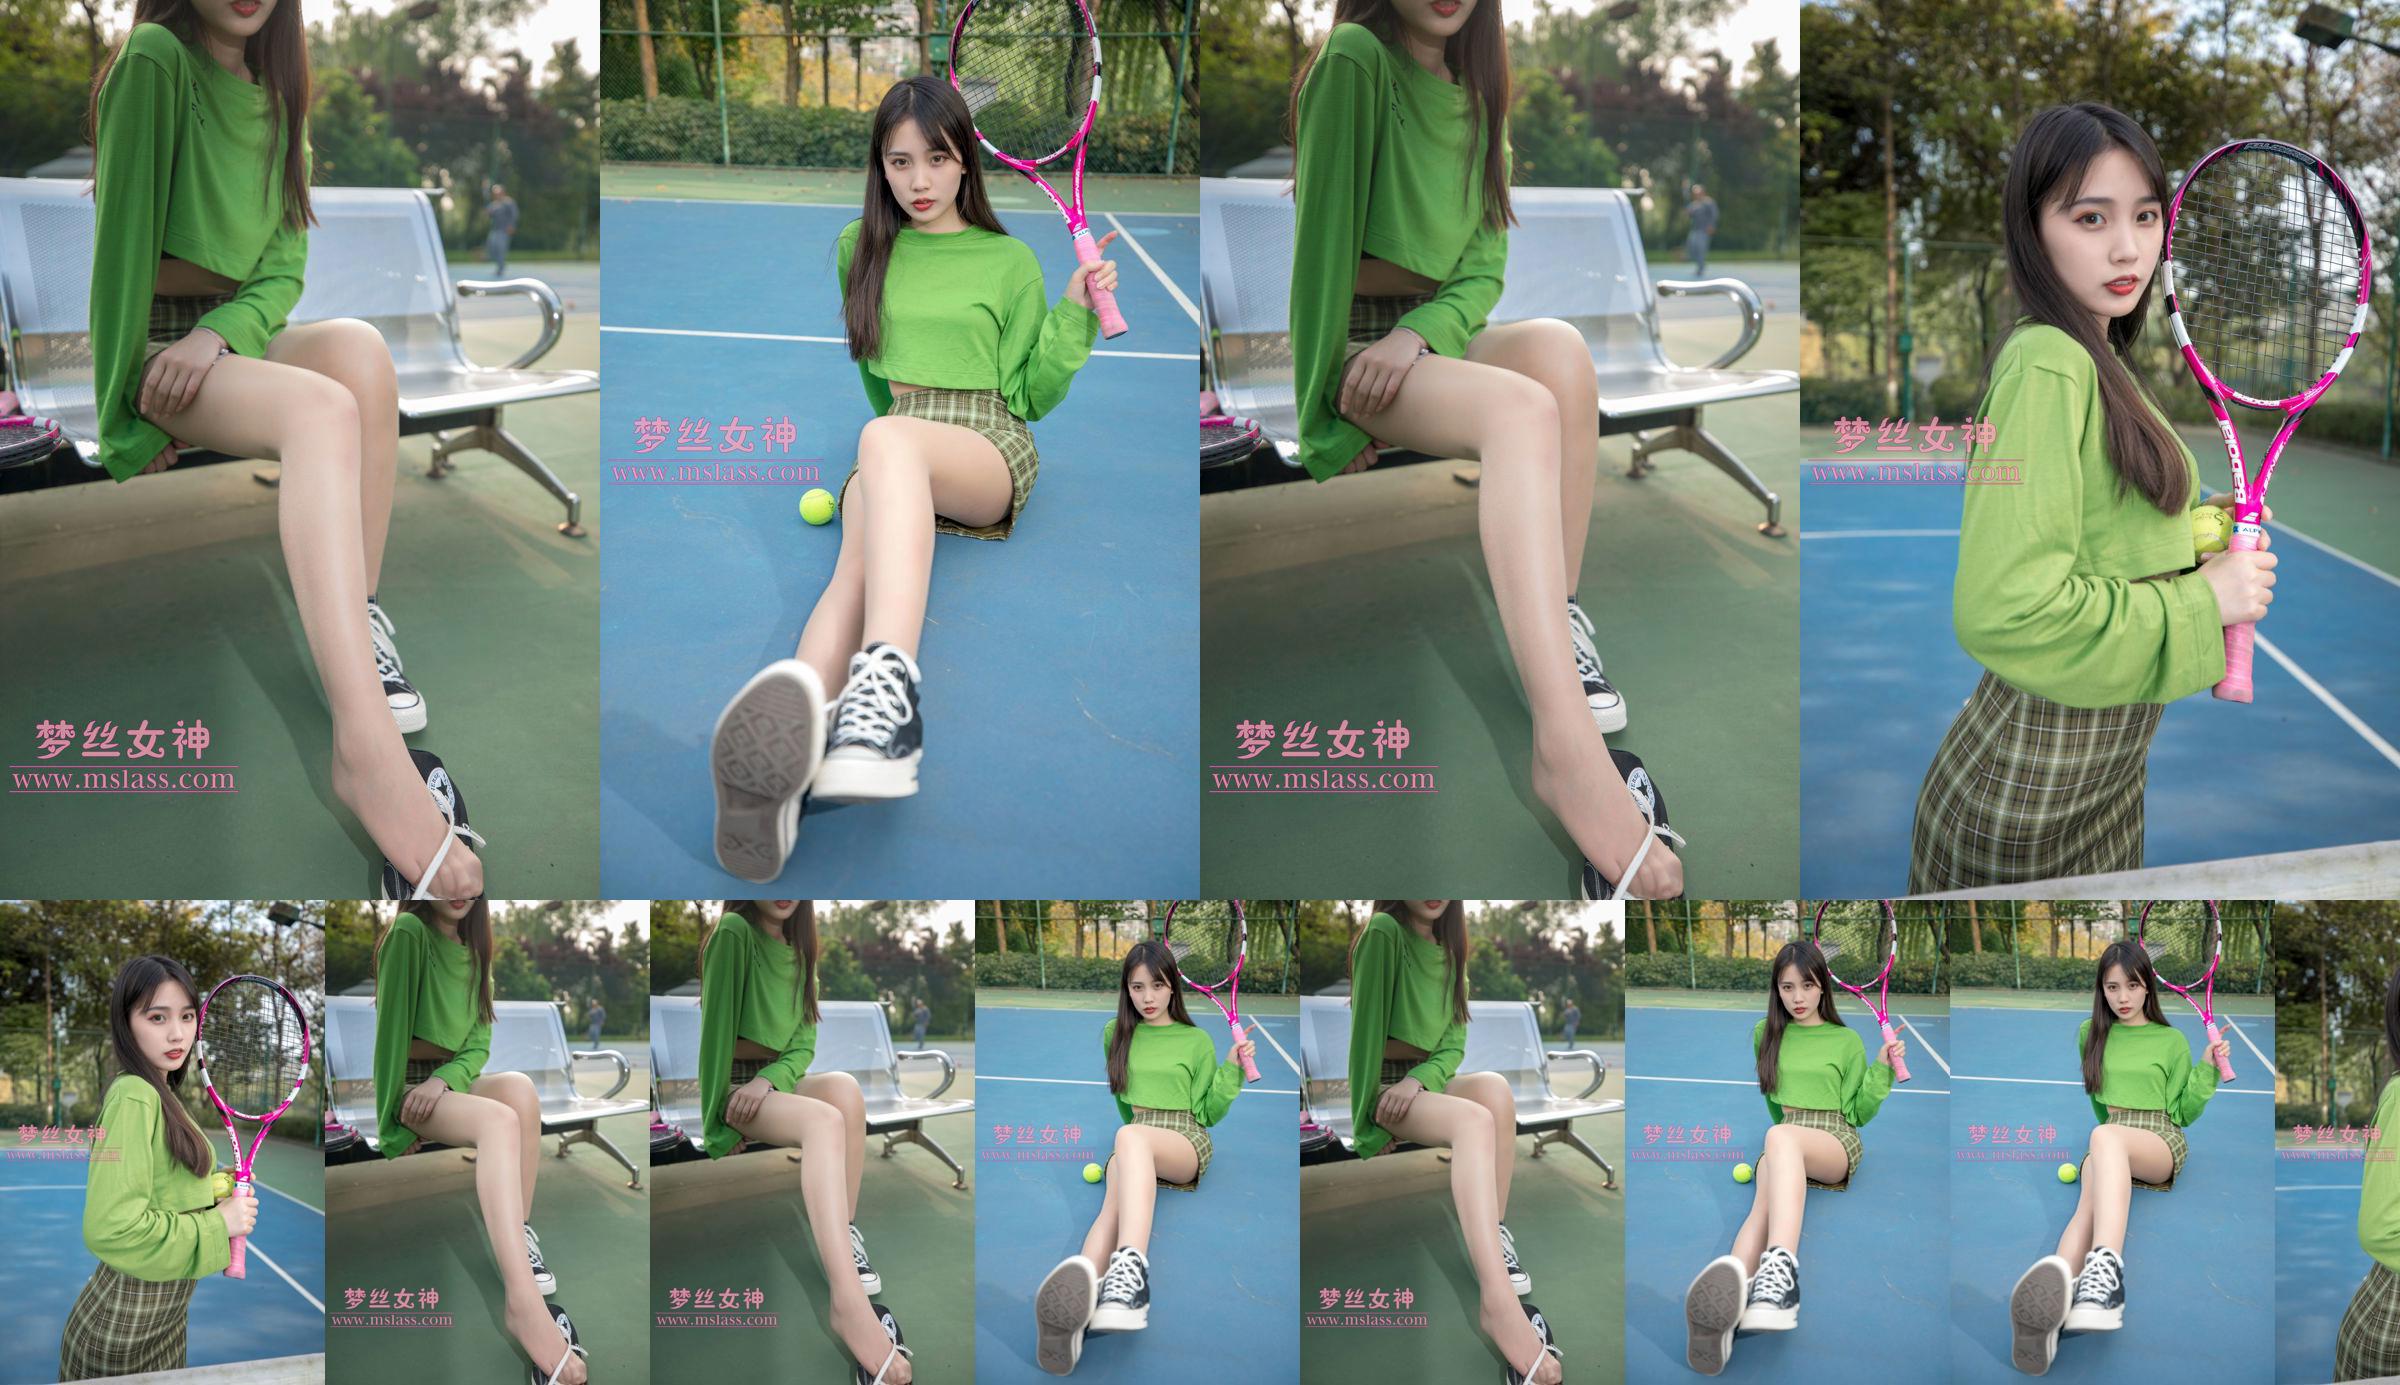 [꿈의 여신 MSLASS] Xiang Xuan 테니스 소녀 No.387ff4 페이지 1